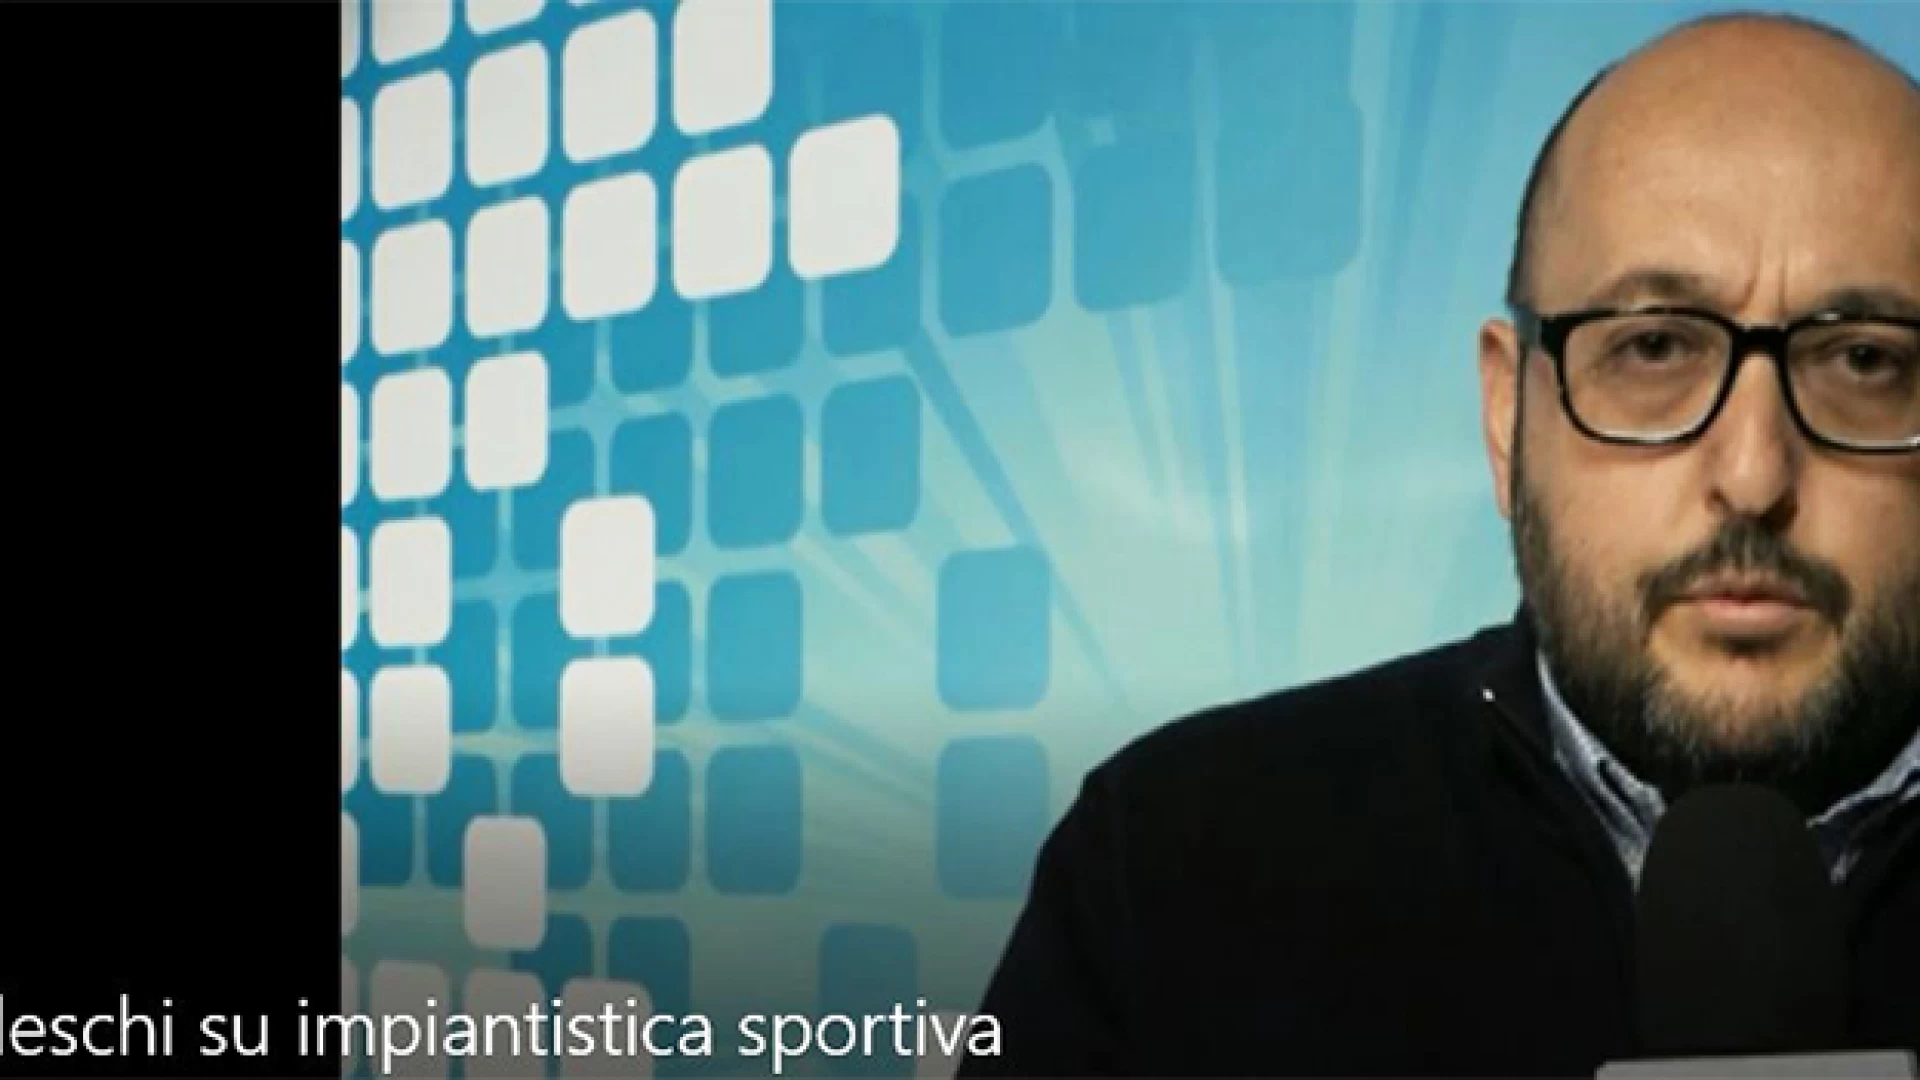 Fornelli: l'intervista video al sindaco Tedeschi sui fondi ricevuti per l'impiantistica sportiva.